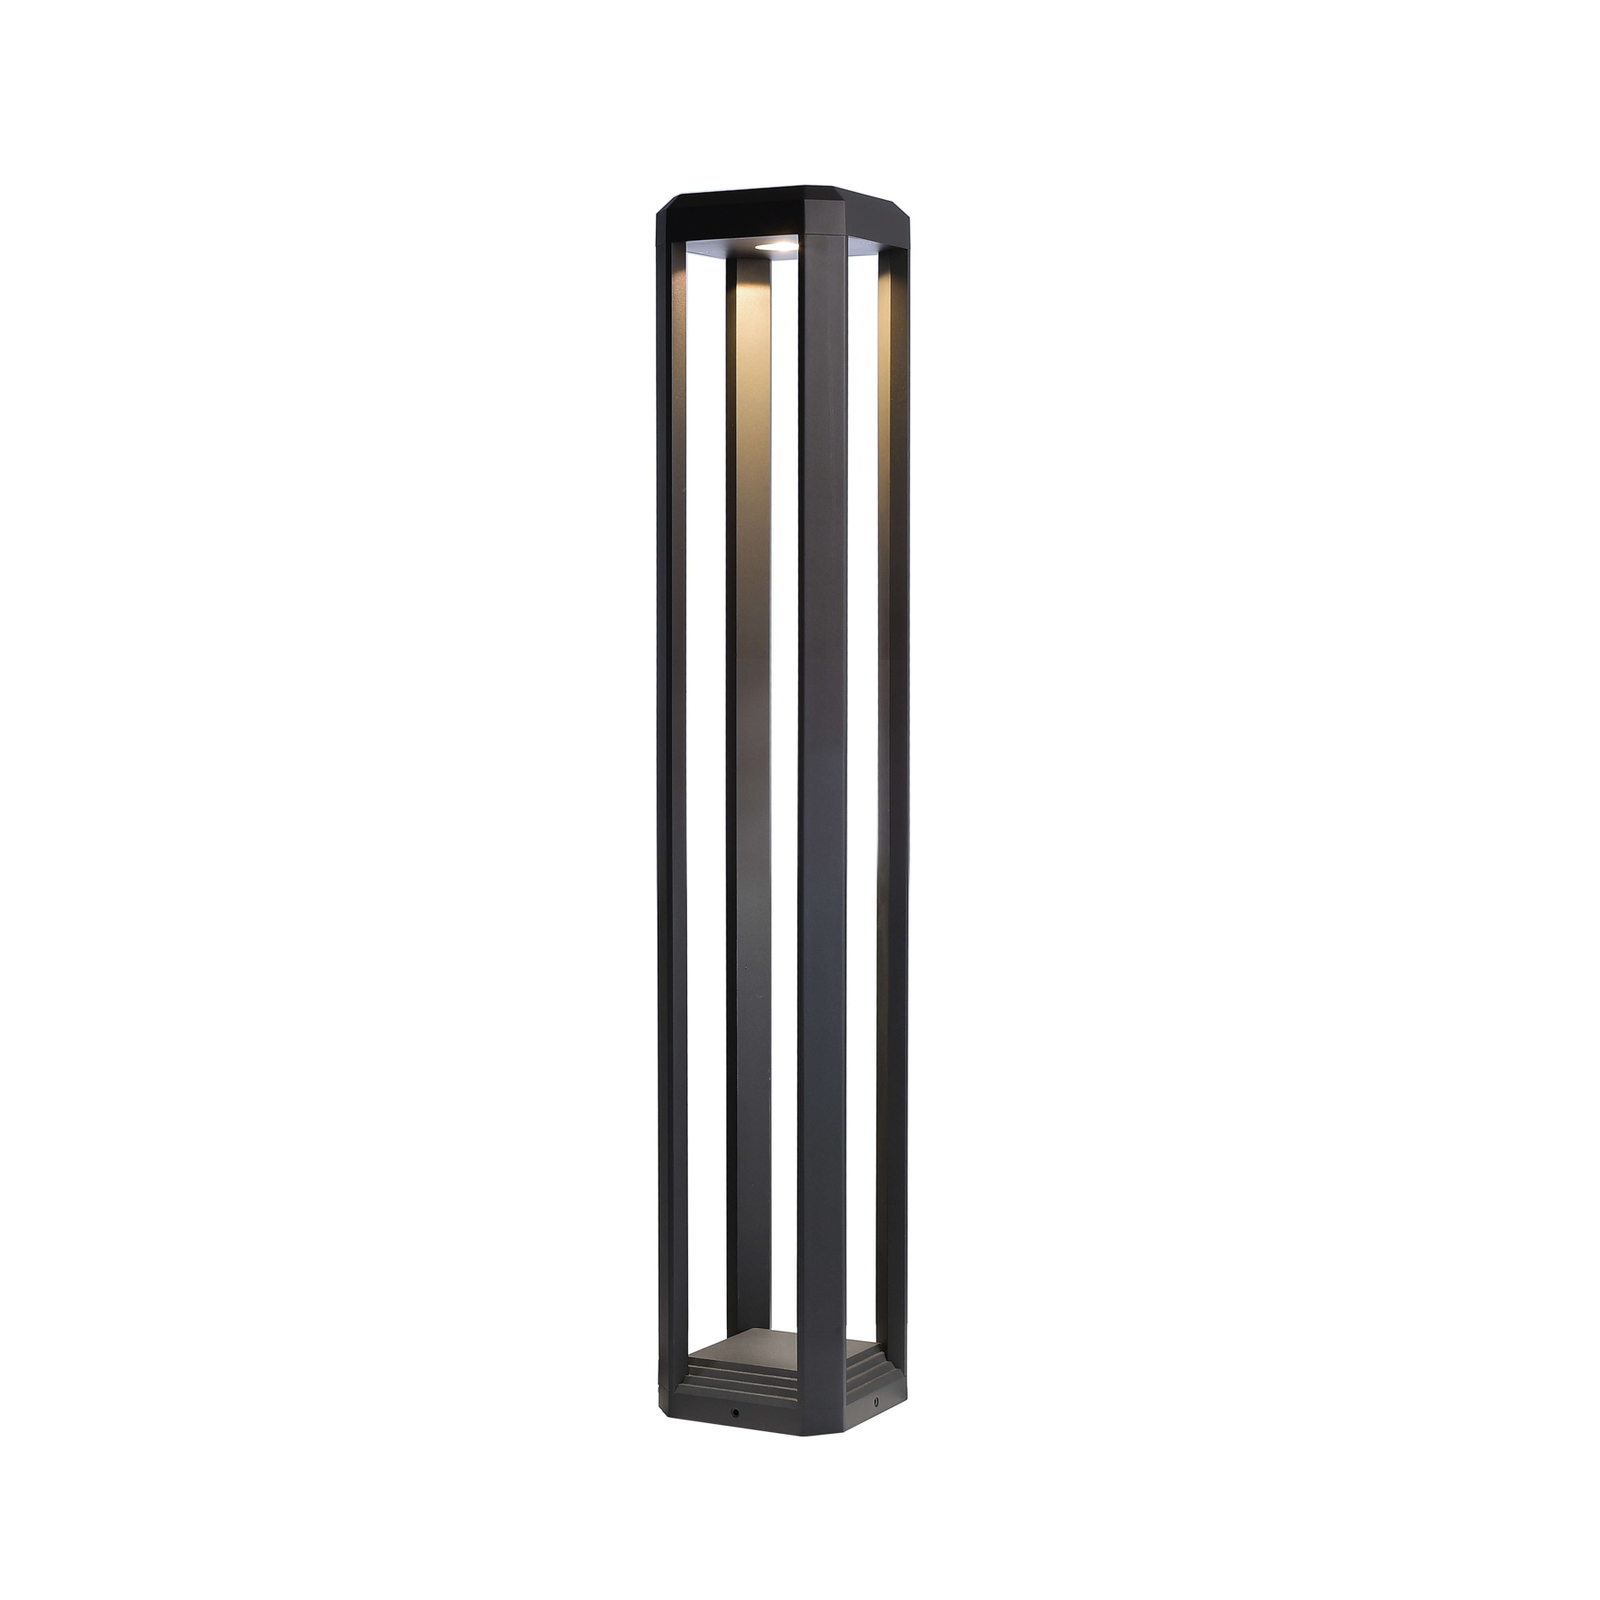 Borne lumineuse LED Rubkat, grise, hauteur 80 cm